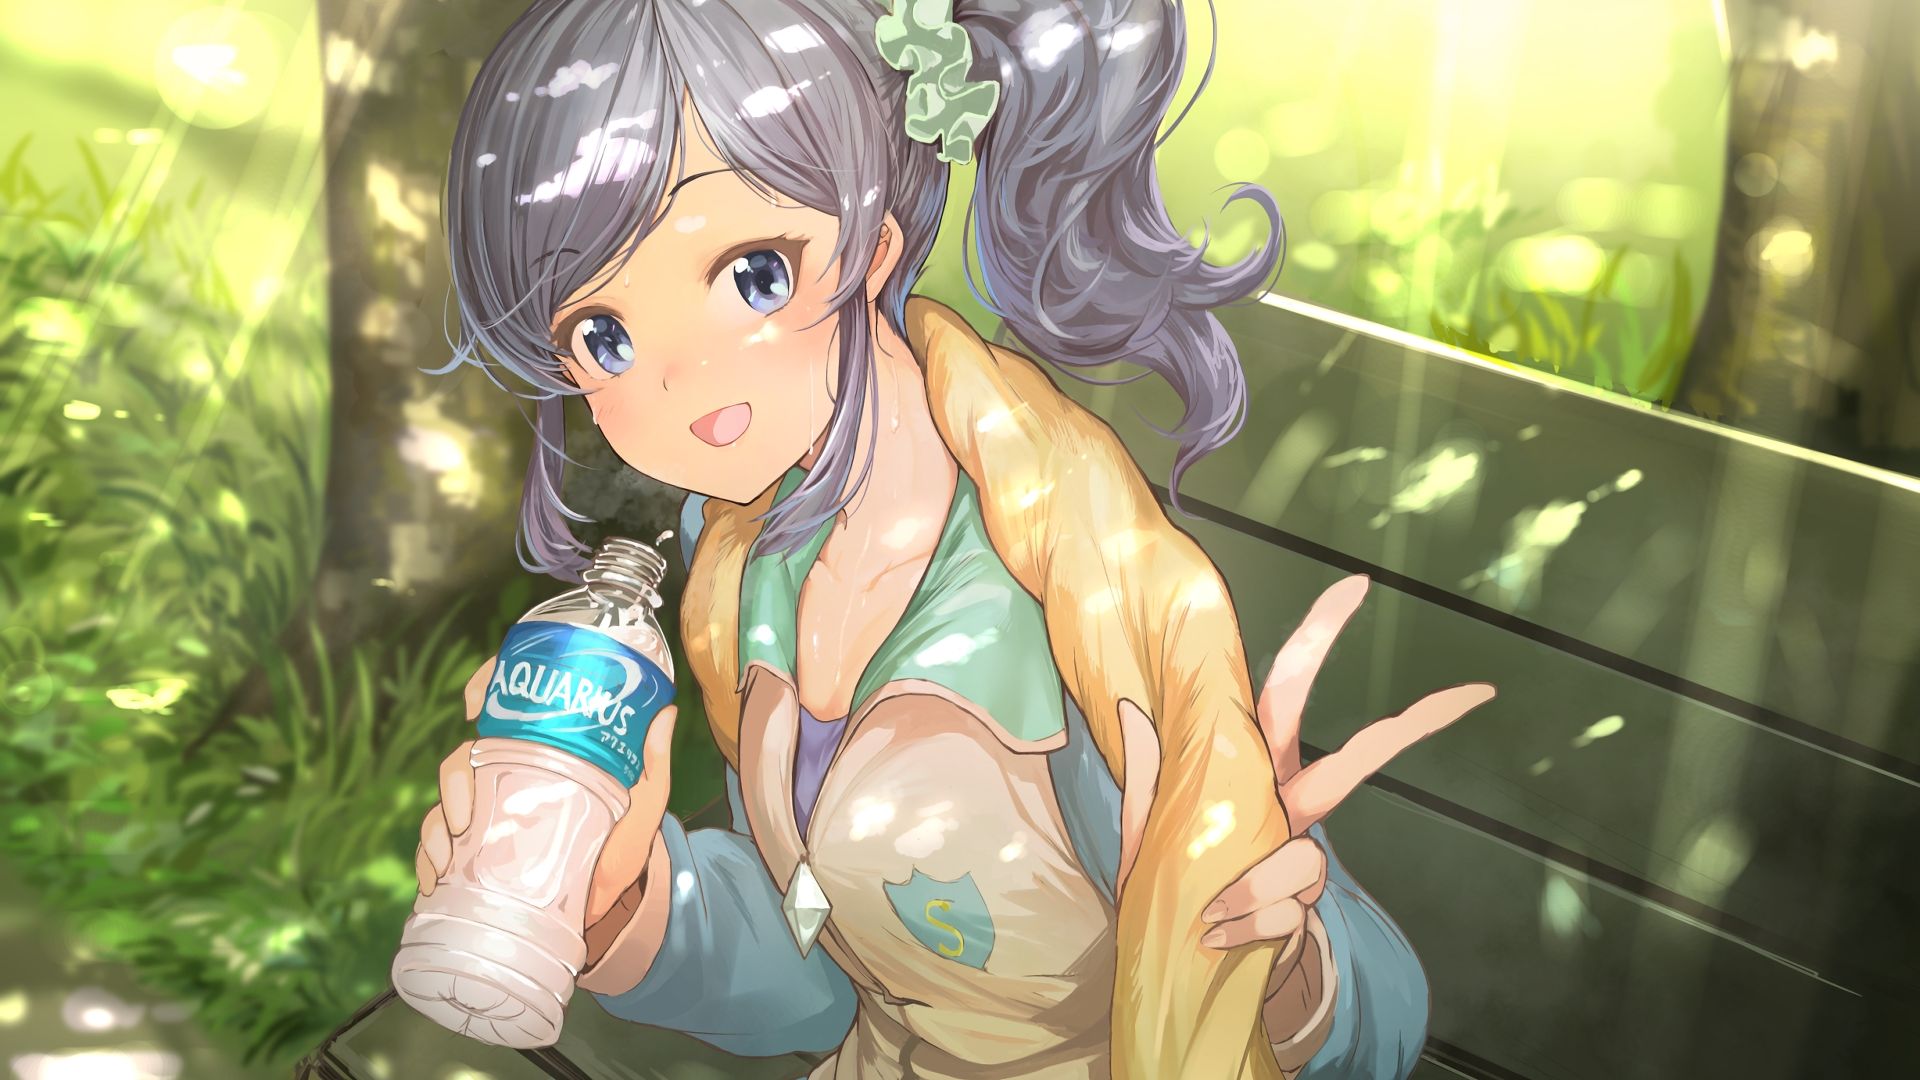 Wallpaper Aoi Kiriya, Aikatsu, anime girl, cute, drinking water